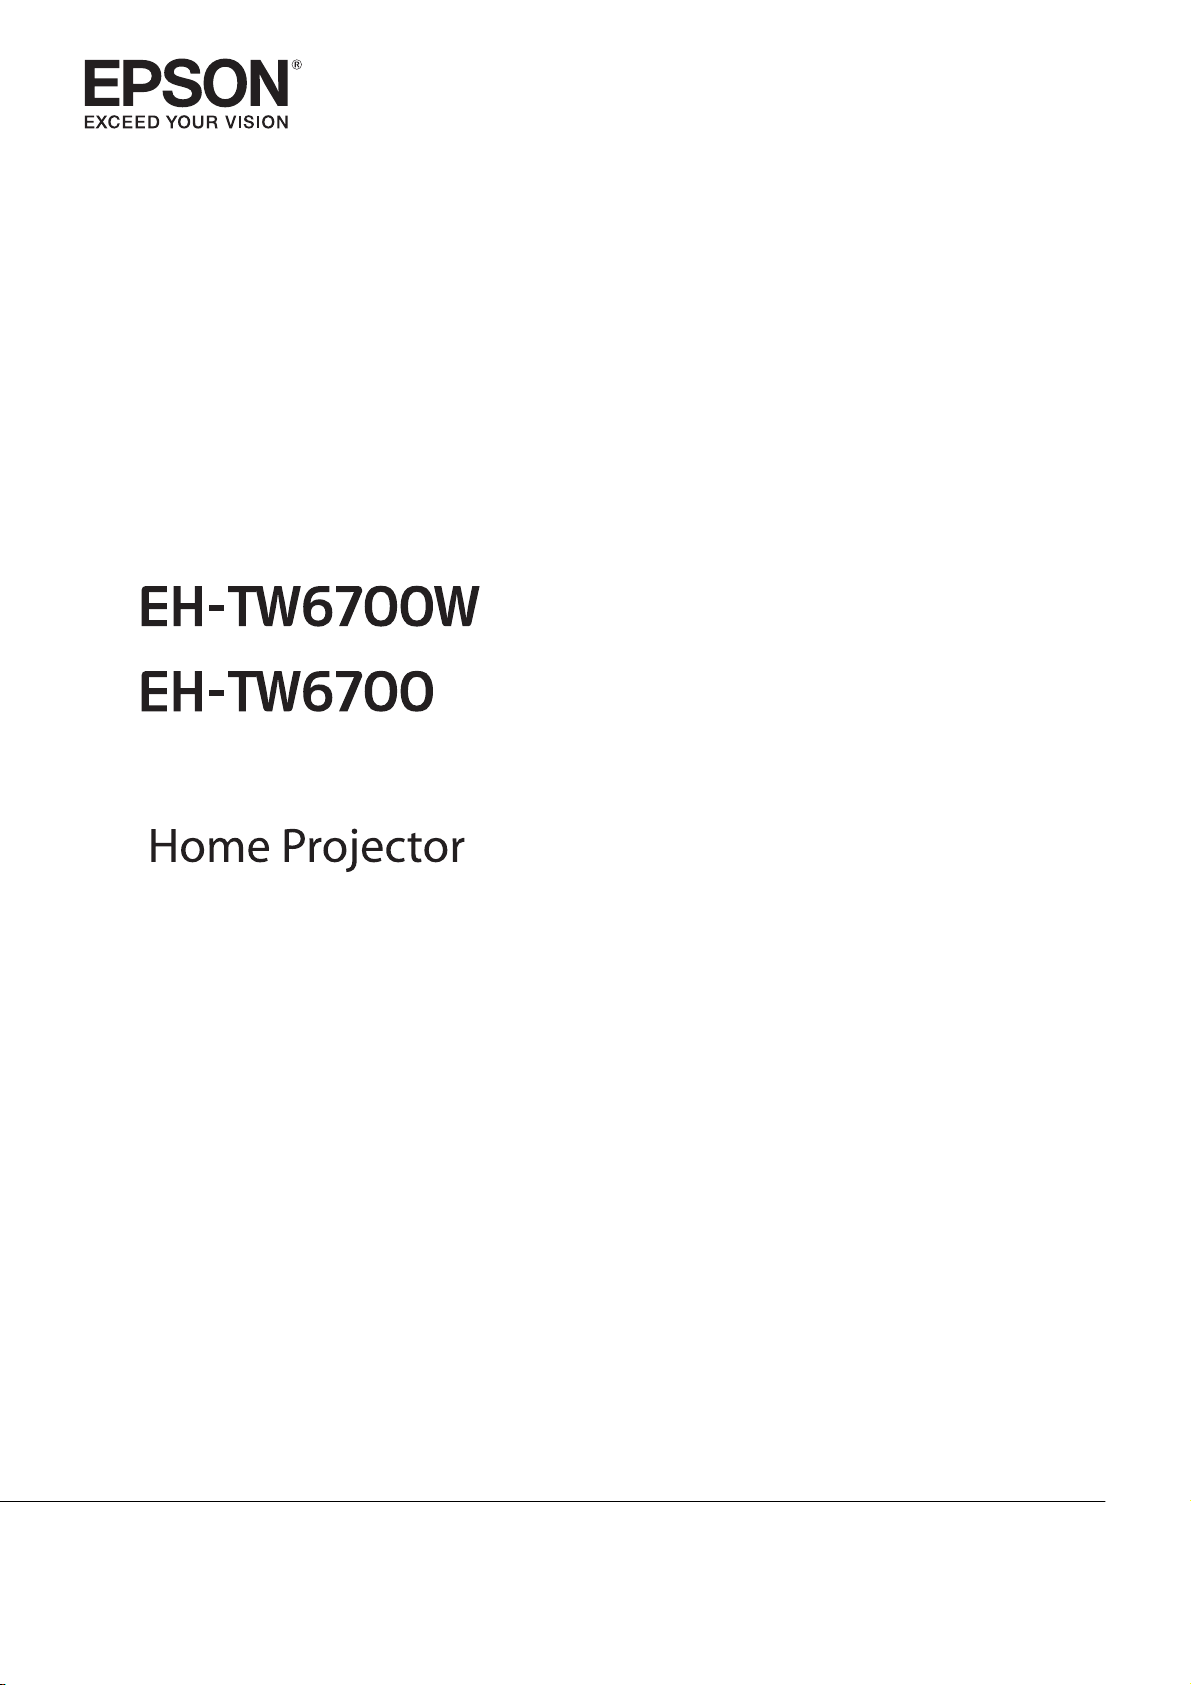 説明書 エプソン EH-TW6700W プロジェクター